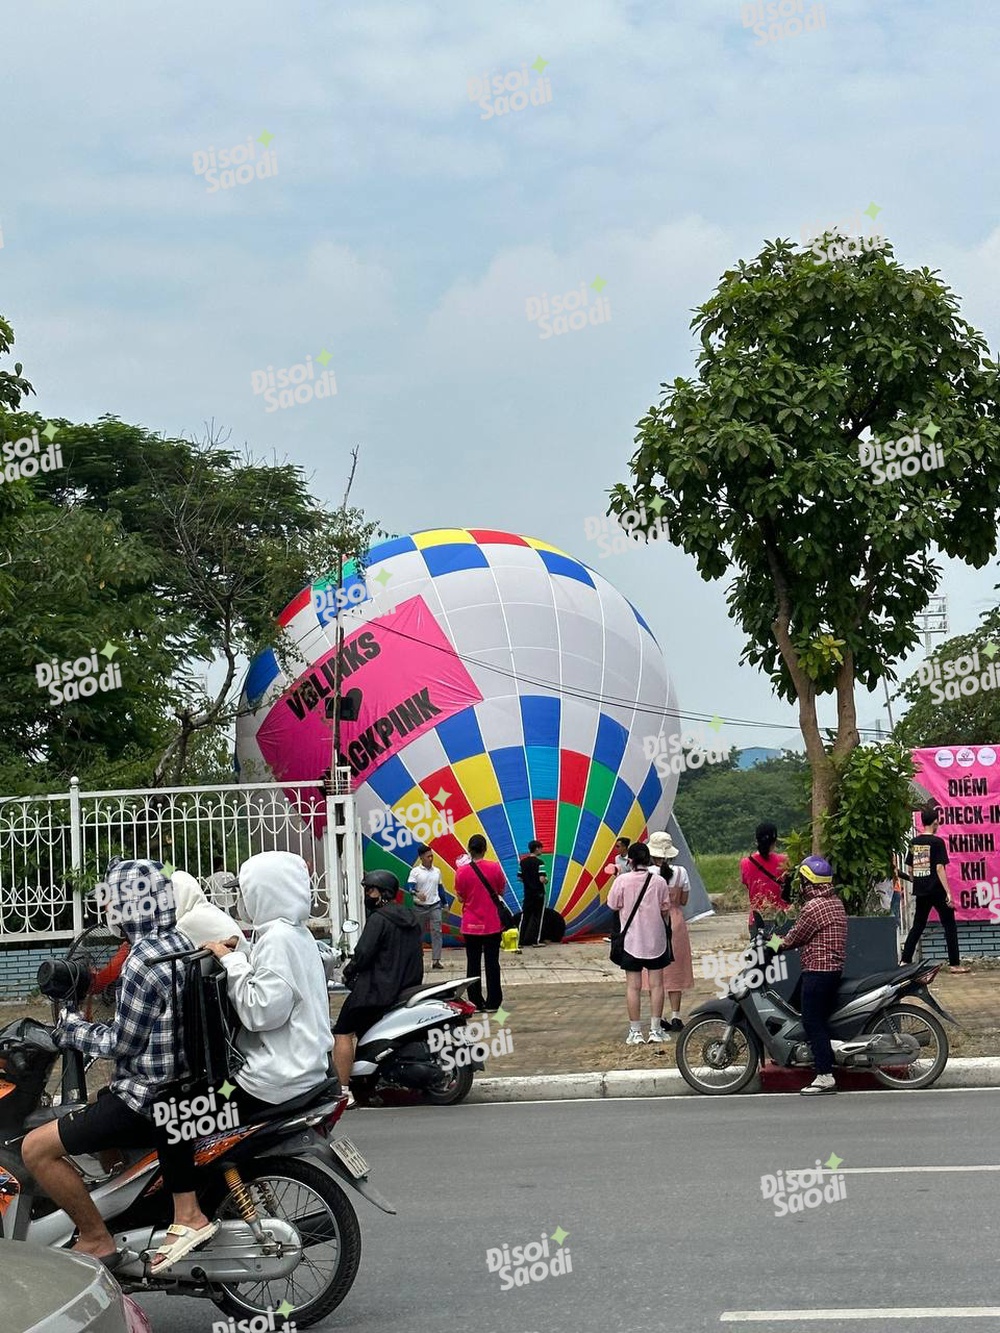 Khinh khí cầu BLACKPINK đã được kéo lên ở Mỹ Đình, xe bus diễu hành đưa Jisoo và Rosé vòng quanh bát phố - Ảnh 6.